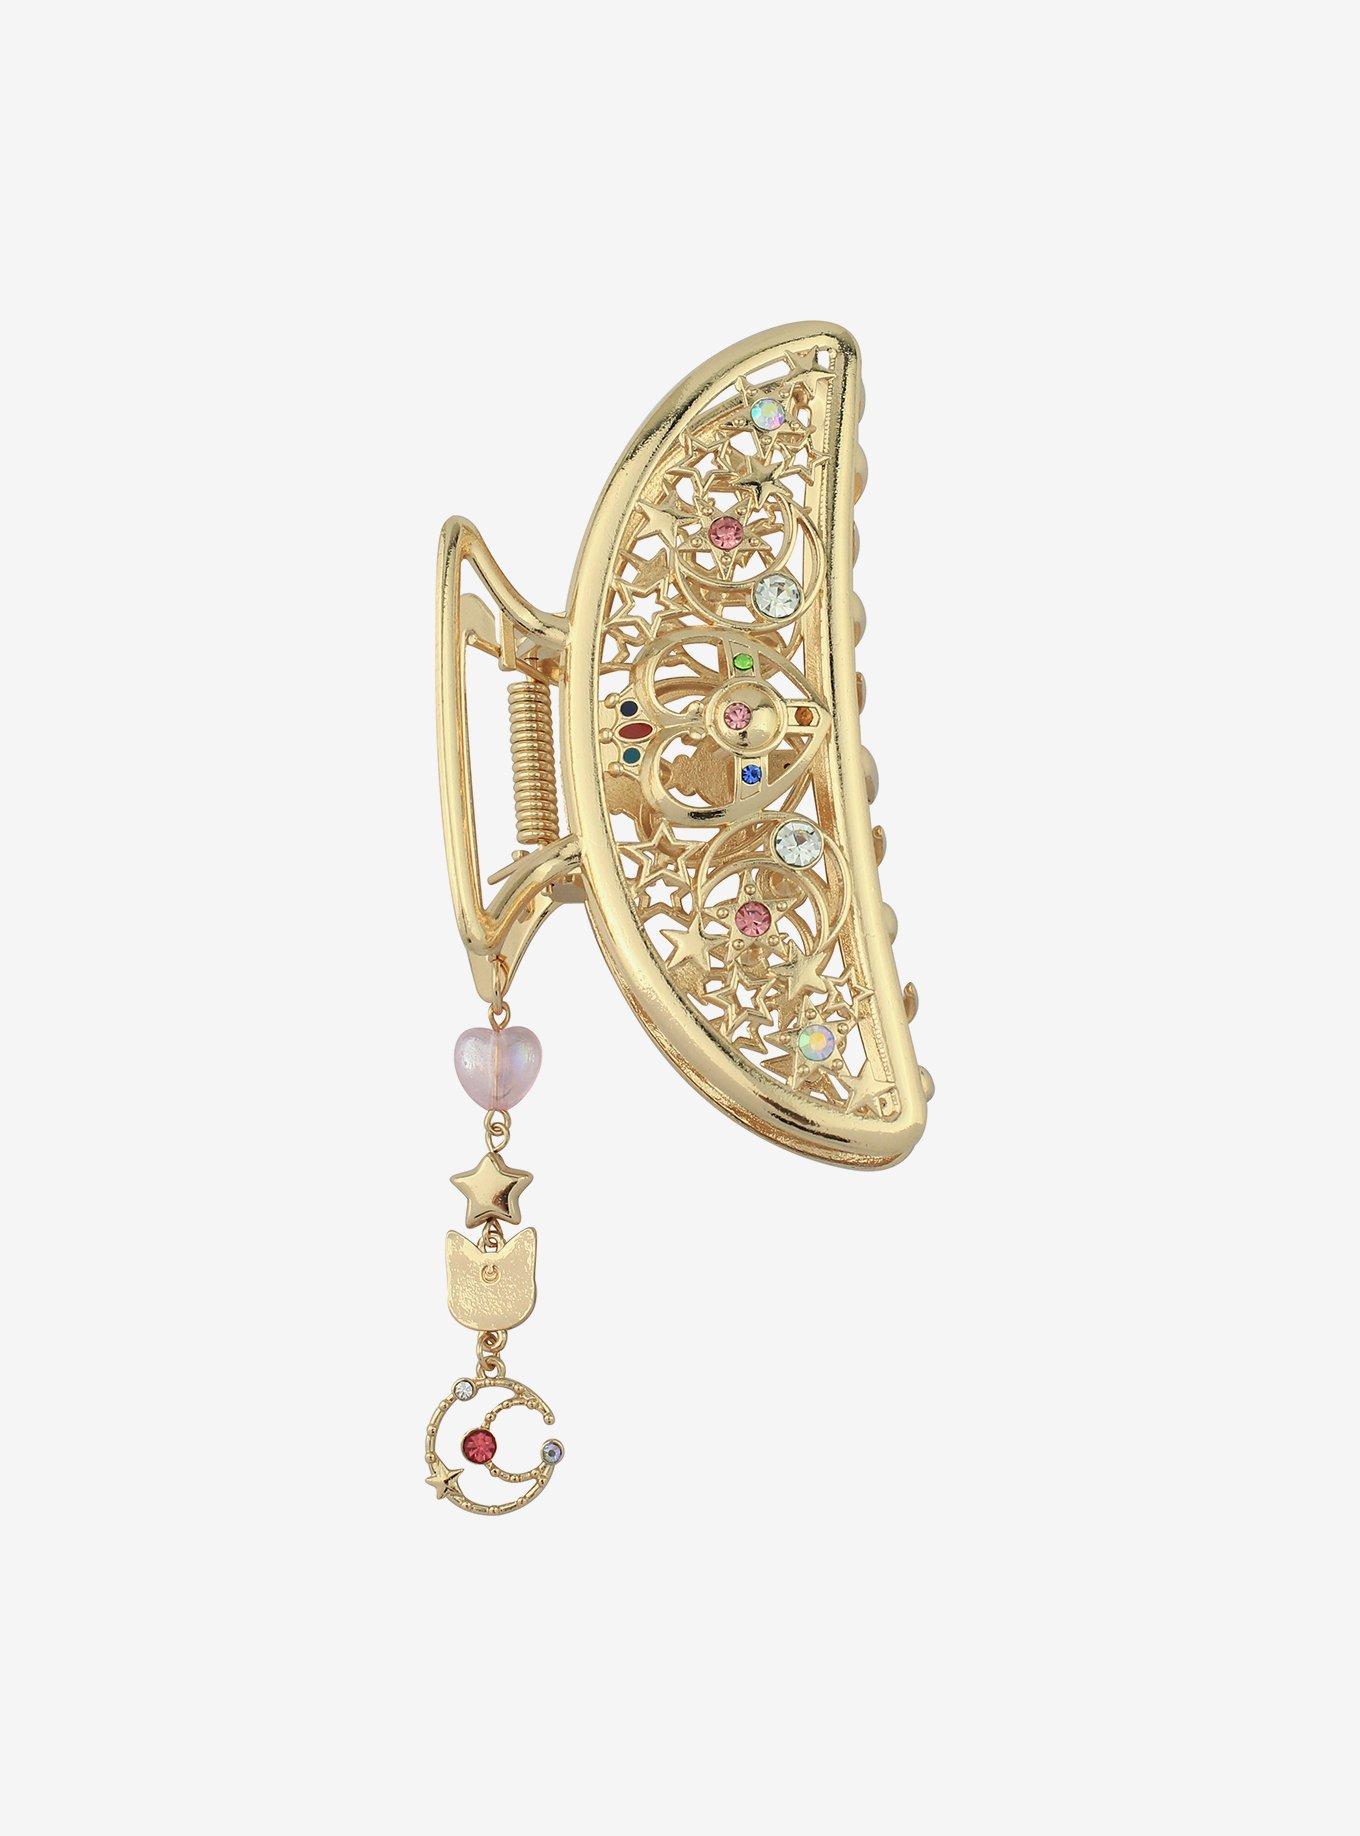 Mini Copper Purse Chains Shoulder Crossbody Strap Bag Accessories Charm  Decoration (Antique Gold,18'')